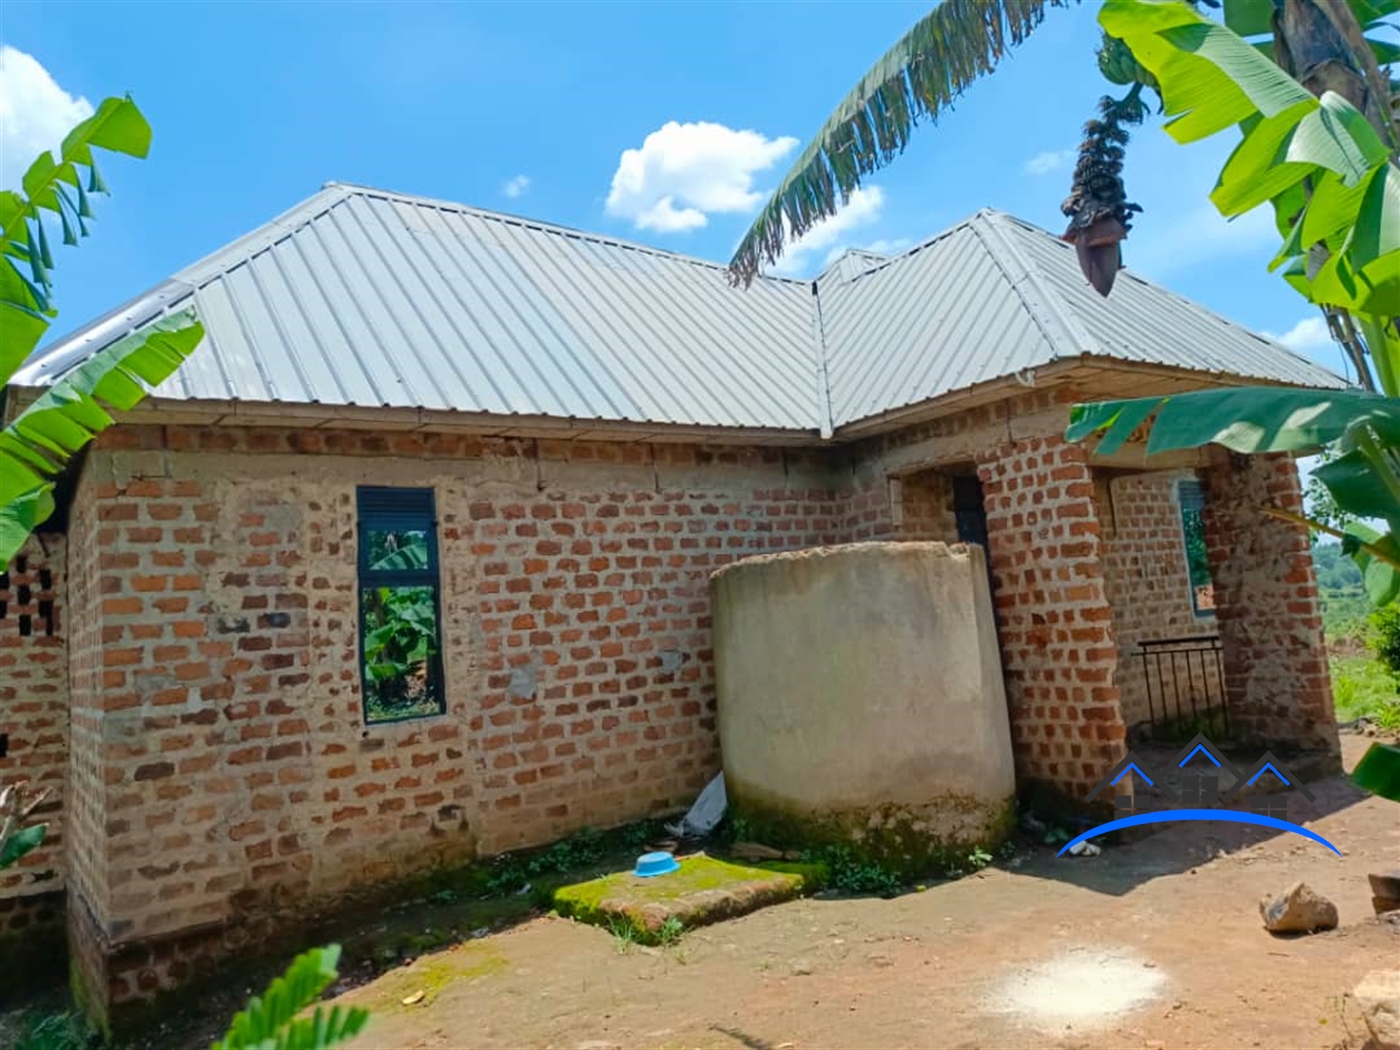 Shell House for sale in Matugga Wakiso